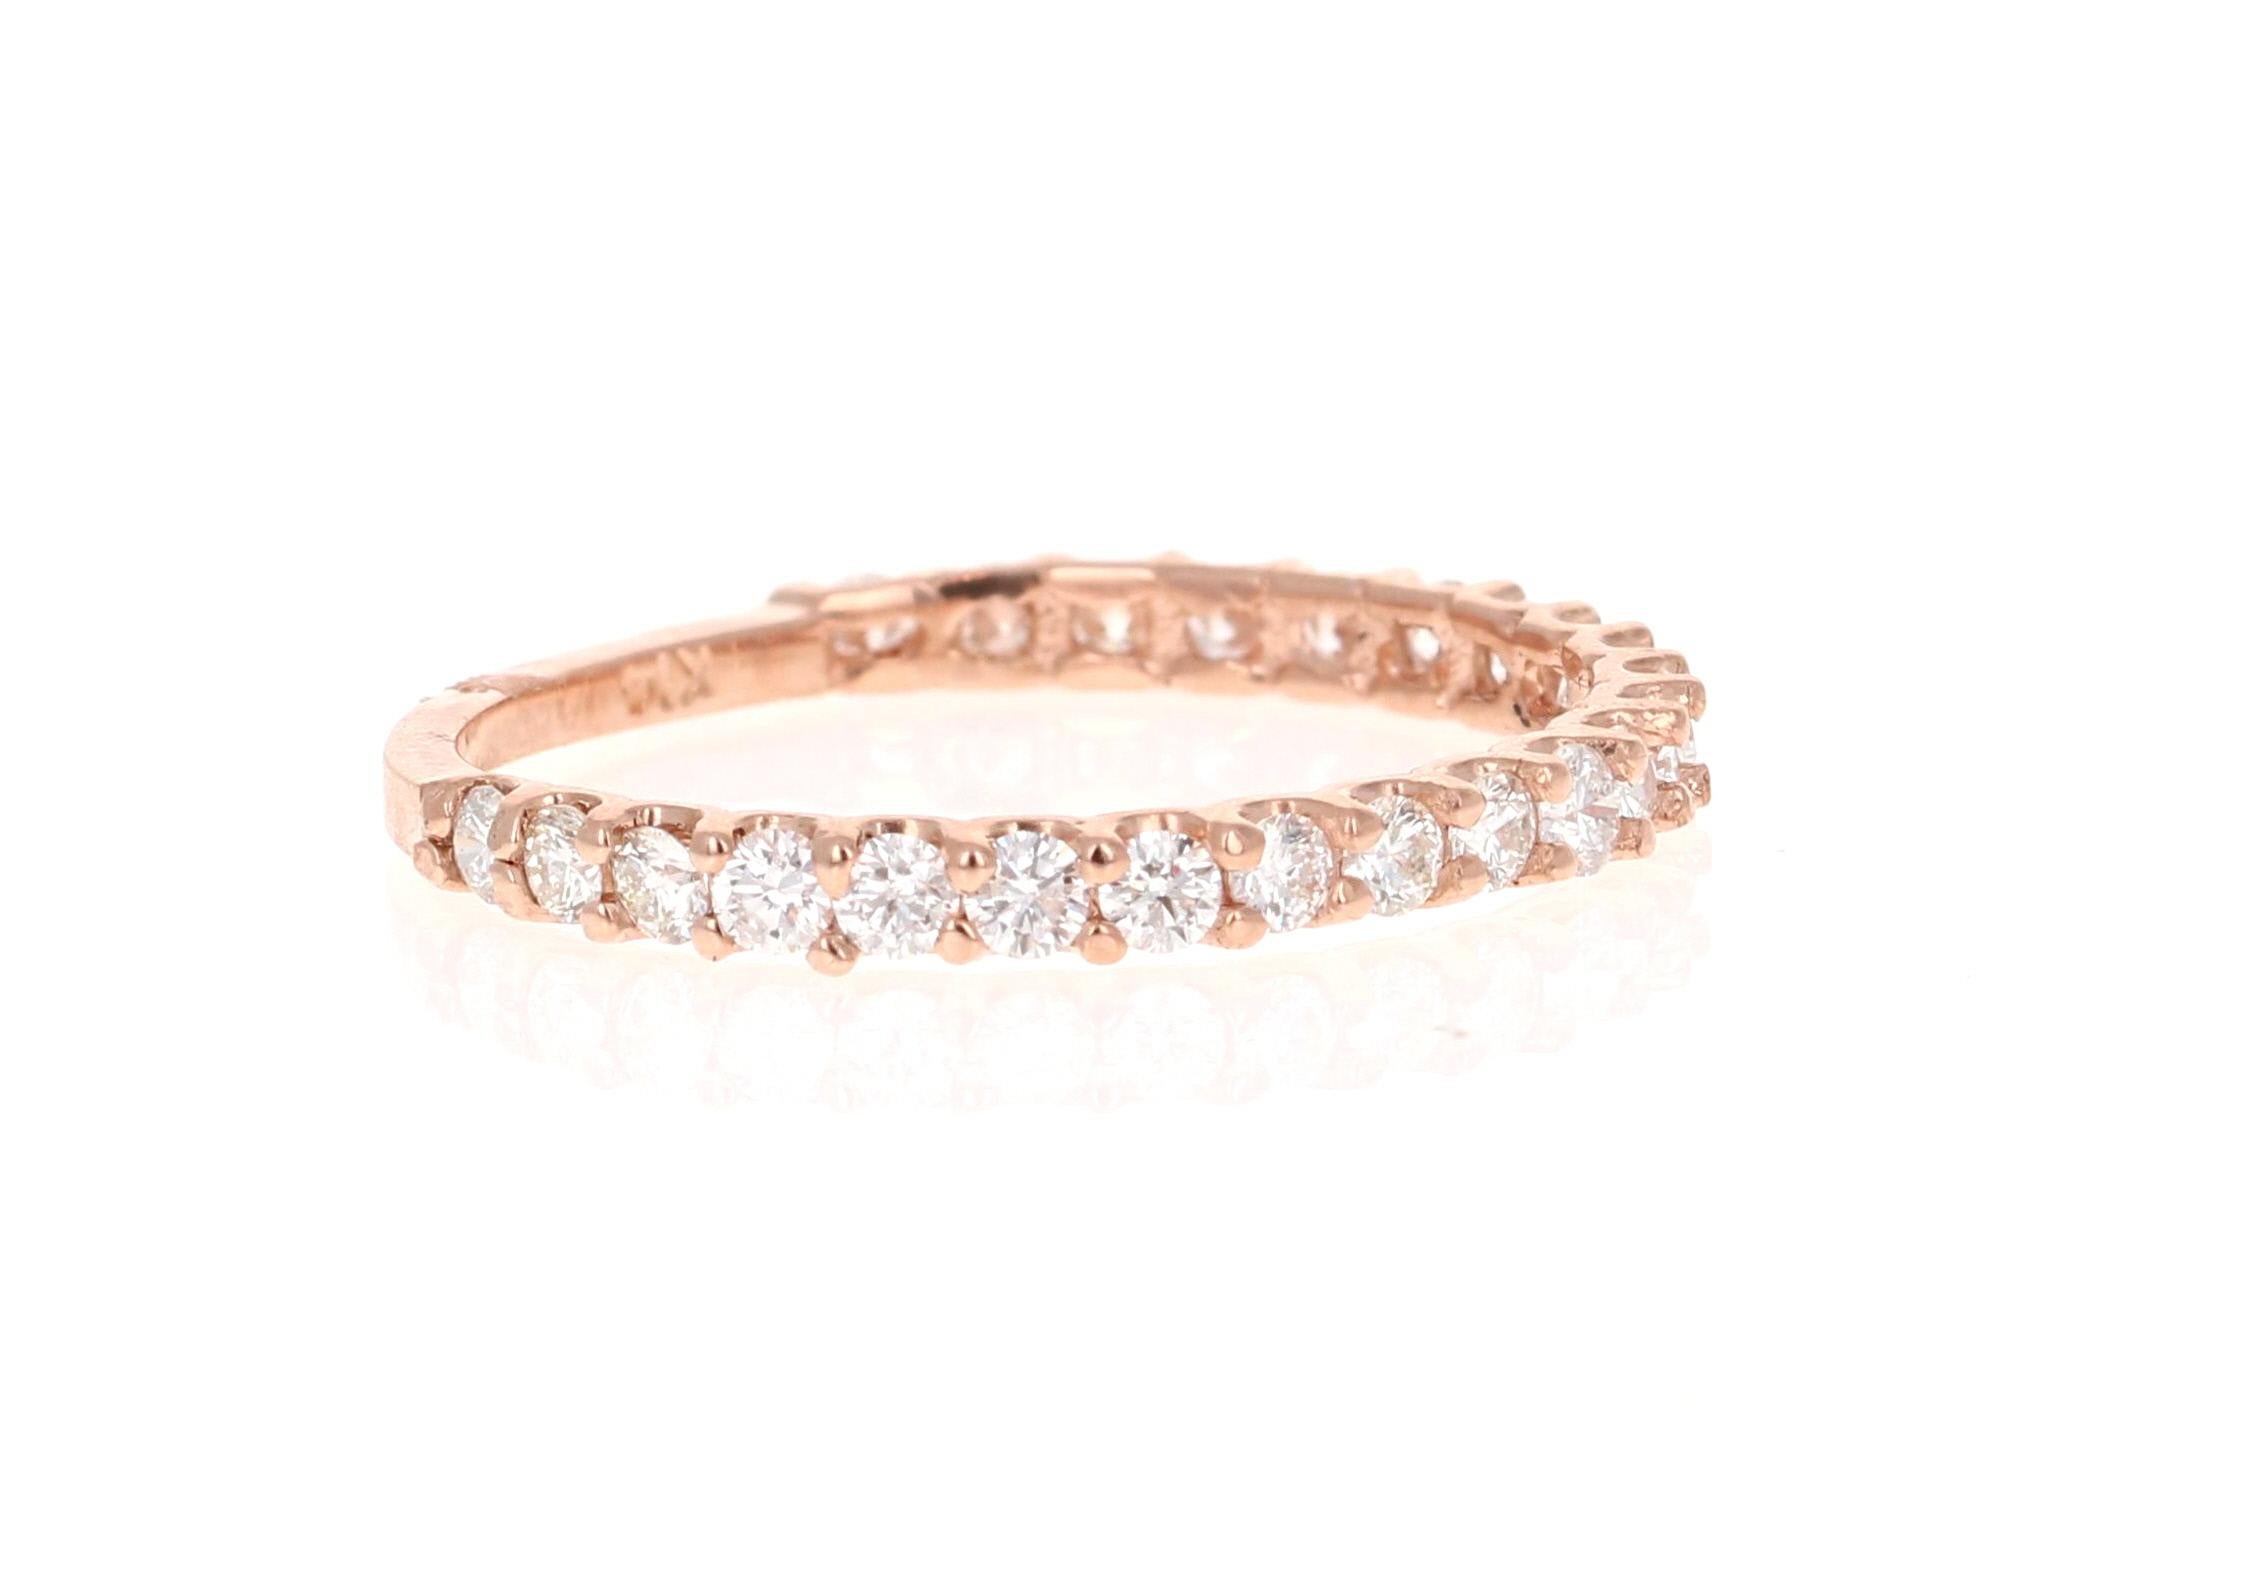 0.64 Karat Rundschliff Diamant Rose Gold Band!

Hübsches und zierliches Diamantband mit 0,64 Karat, das sicher eine tolle Ergänzung für jede Accessoire-Kollektion ist!   Es gibt 23 Diamanten im Rundschliff mit einem Gewicht von 0,64 Karat.  Das Band